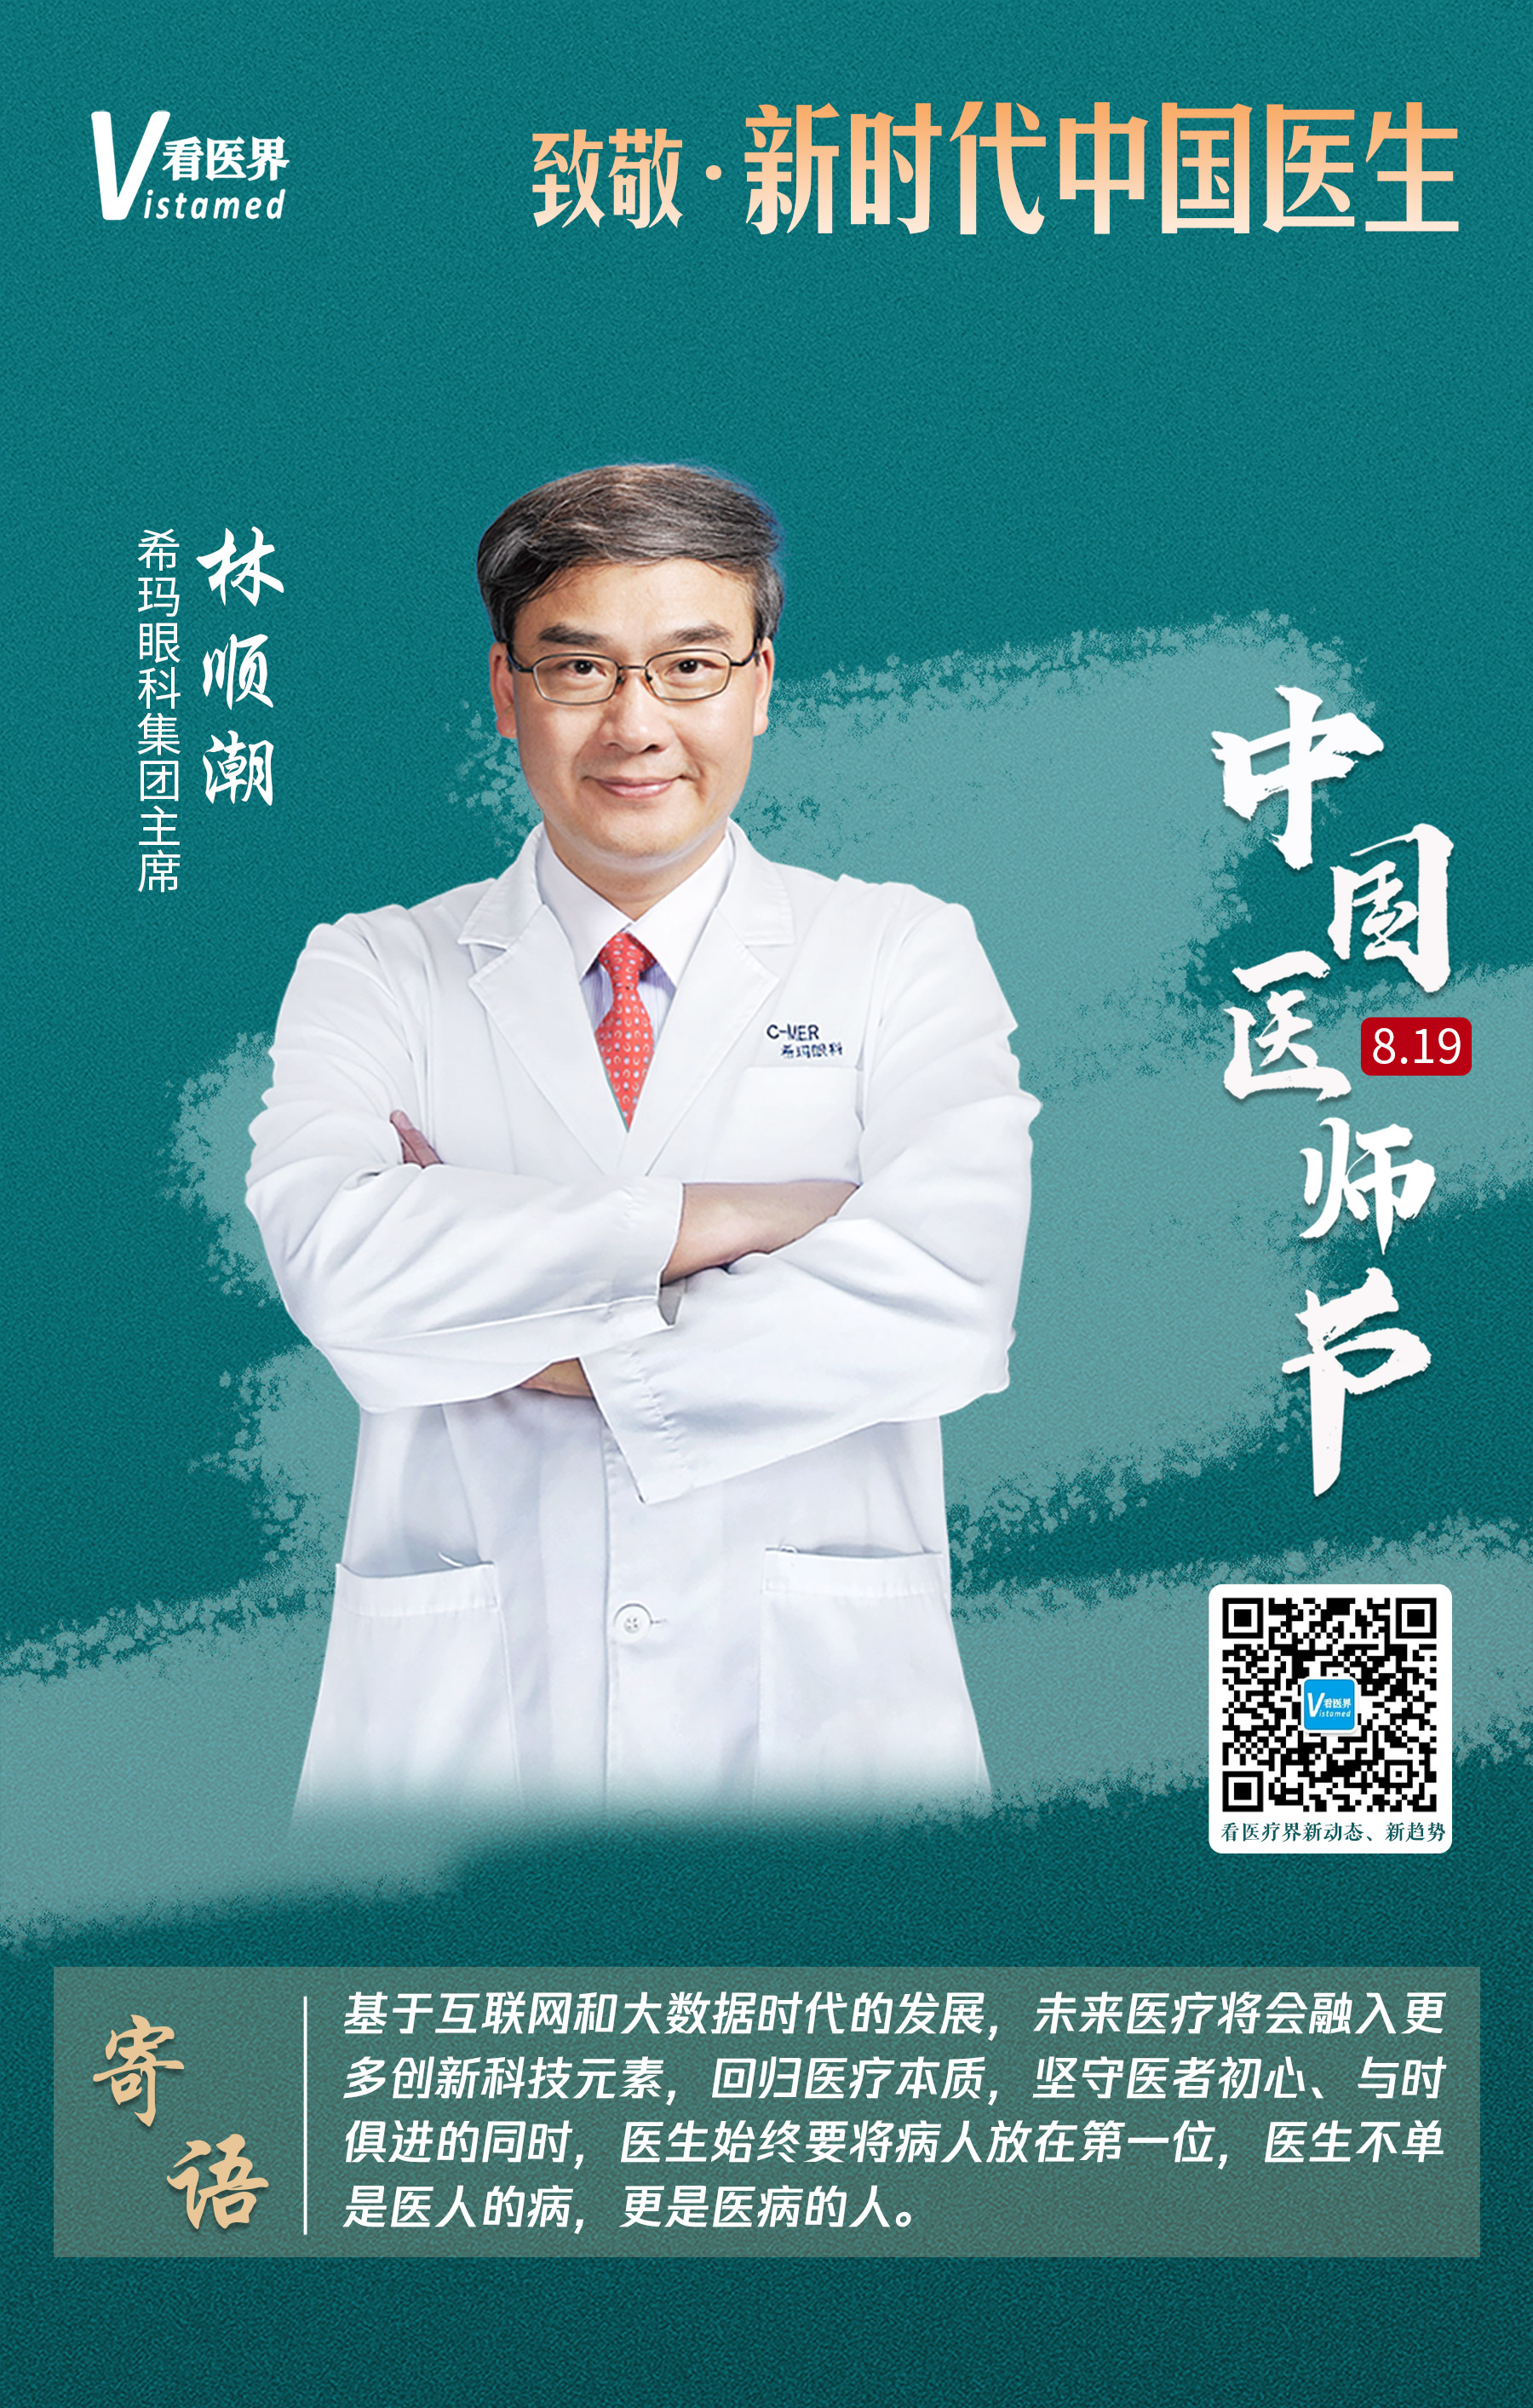 看医界 医师节 致敬新时代的中国医生 医界精英寄语